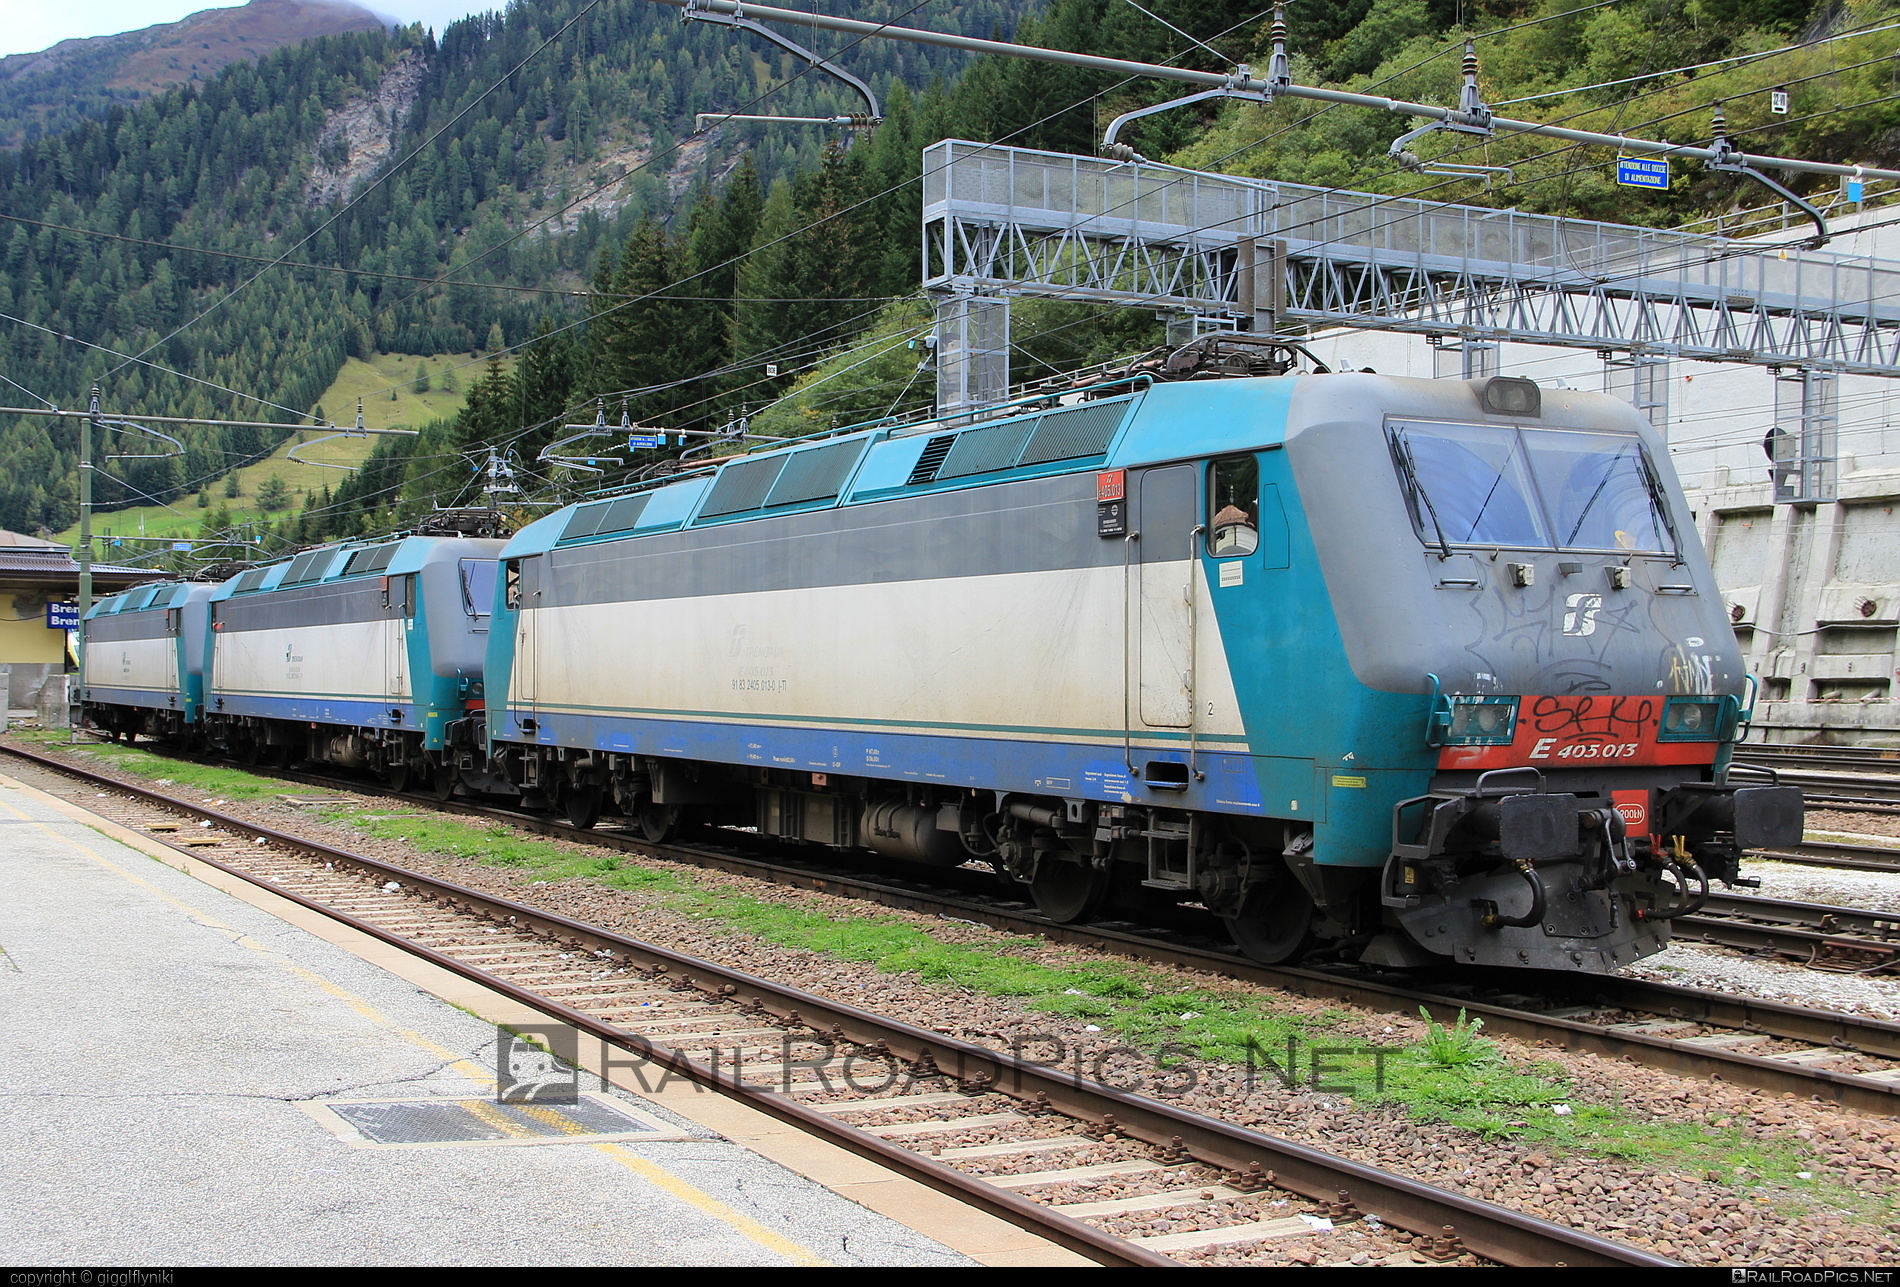 Bombardier Class E.405 - E405.013 operated by Mercitalia Rail S.r.l. #bombardier #bombardierE405 #ferroviedellostato #fs #fsClassE405 #fsitaliane #mercitalia #trenitalia #trenitaliaspa